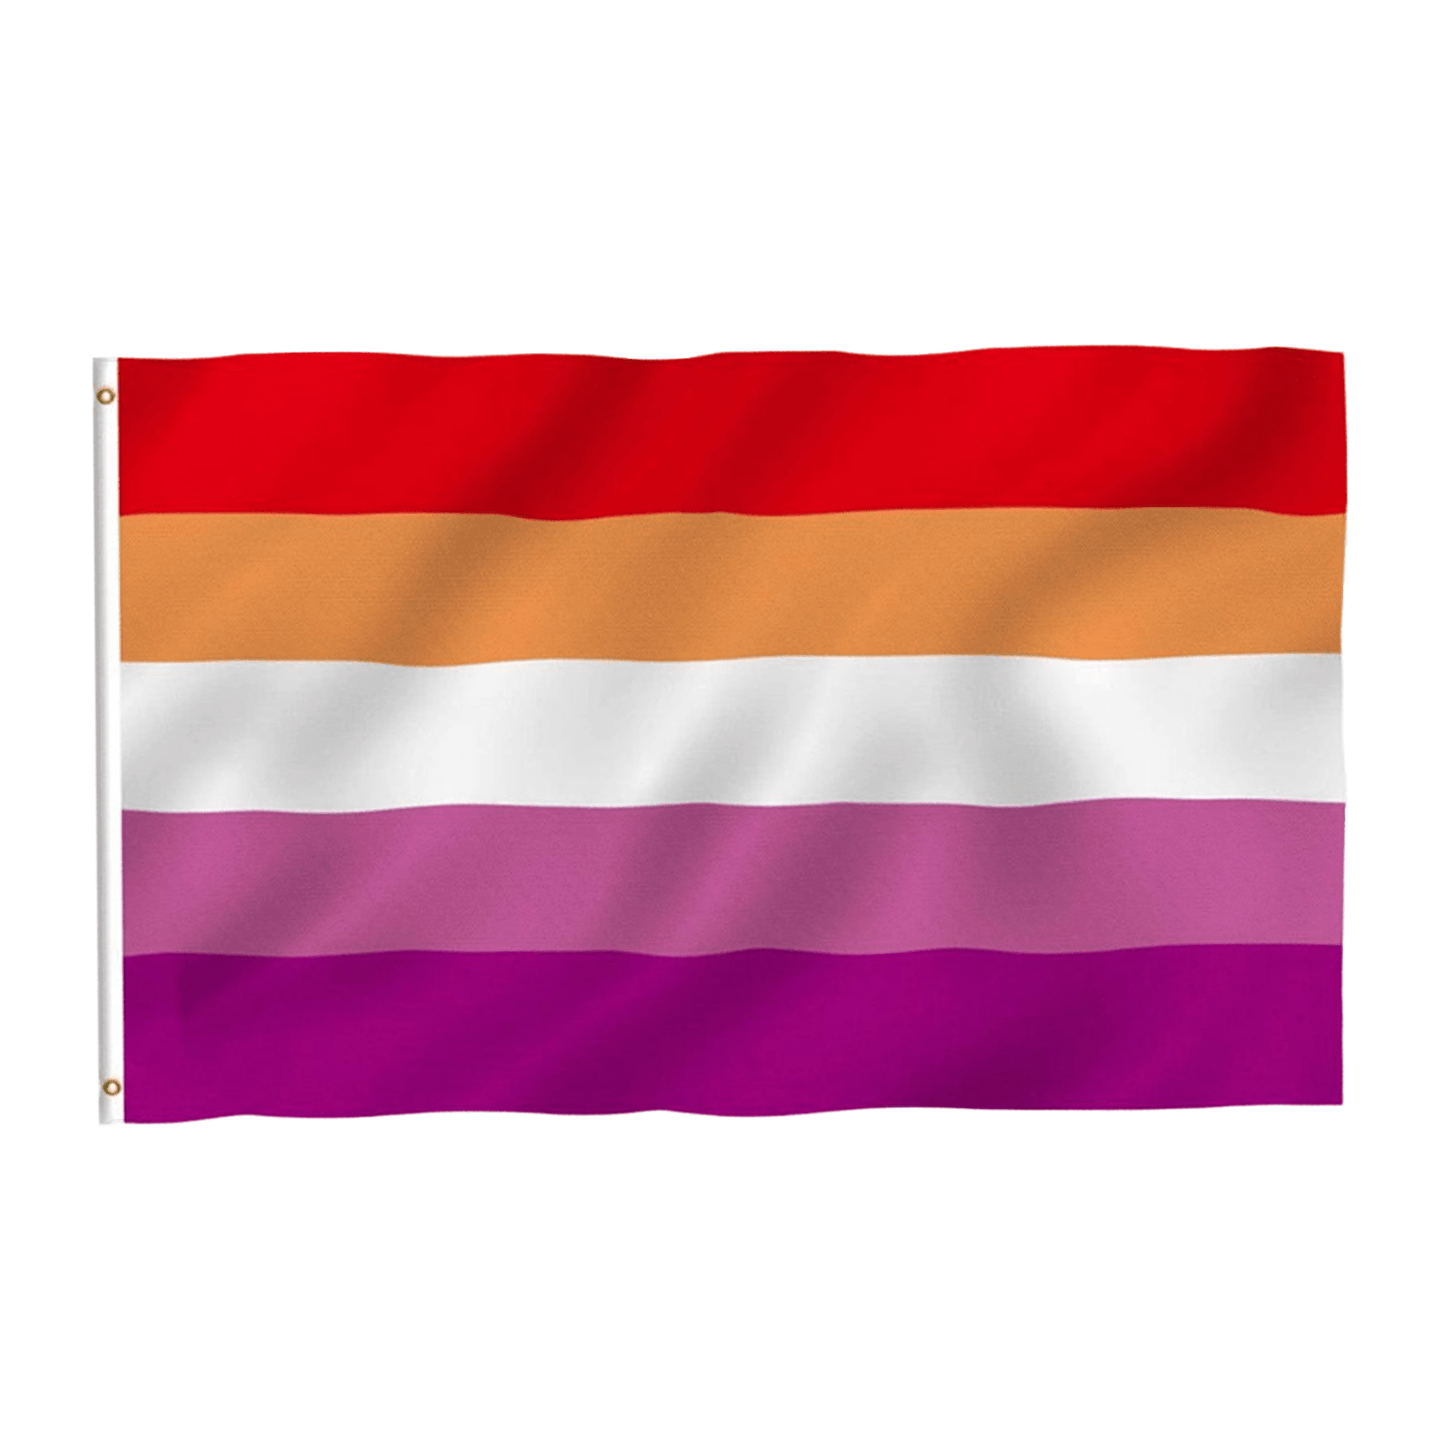 Sunset Lesbian 3 x 5 Ft Flag - Rose Gold Co. Shop